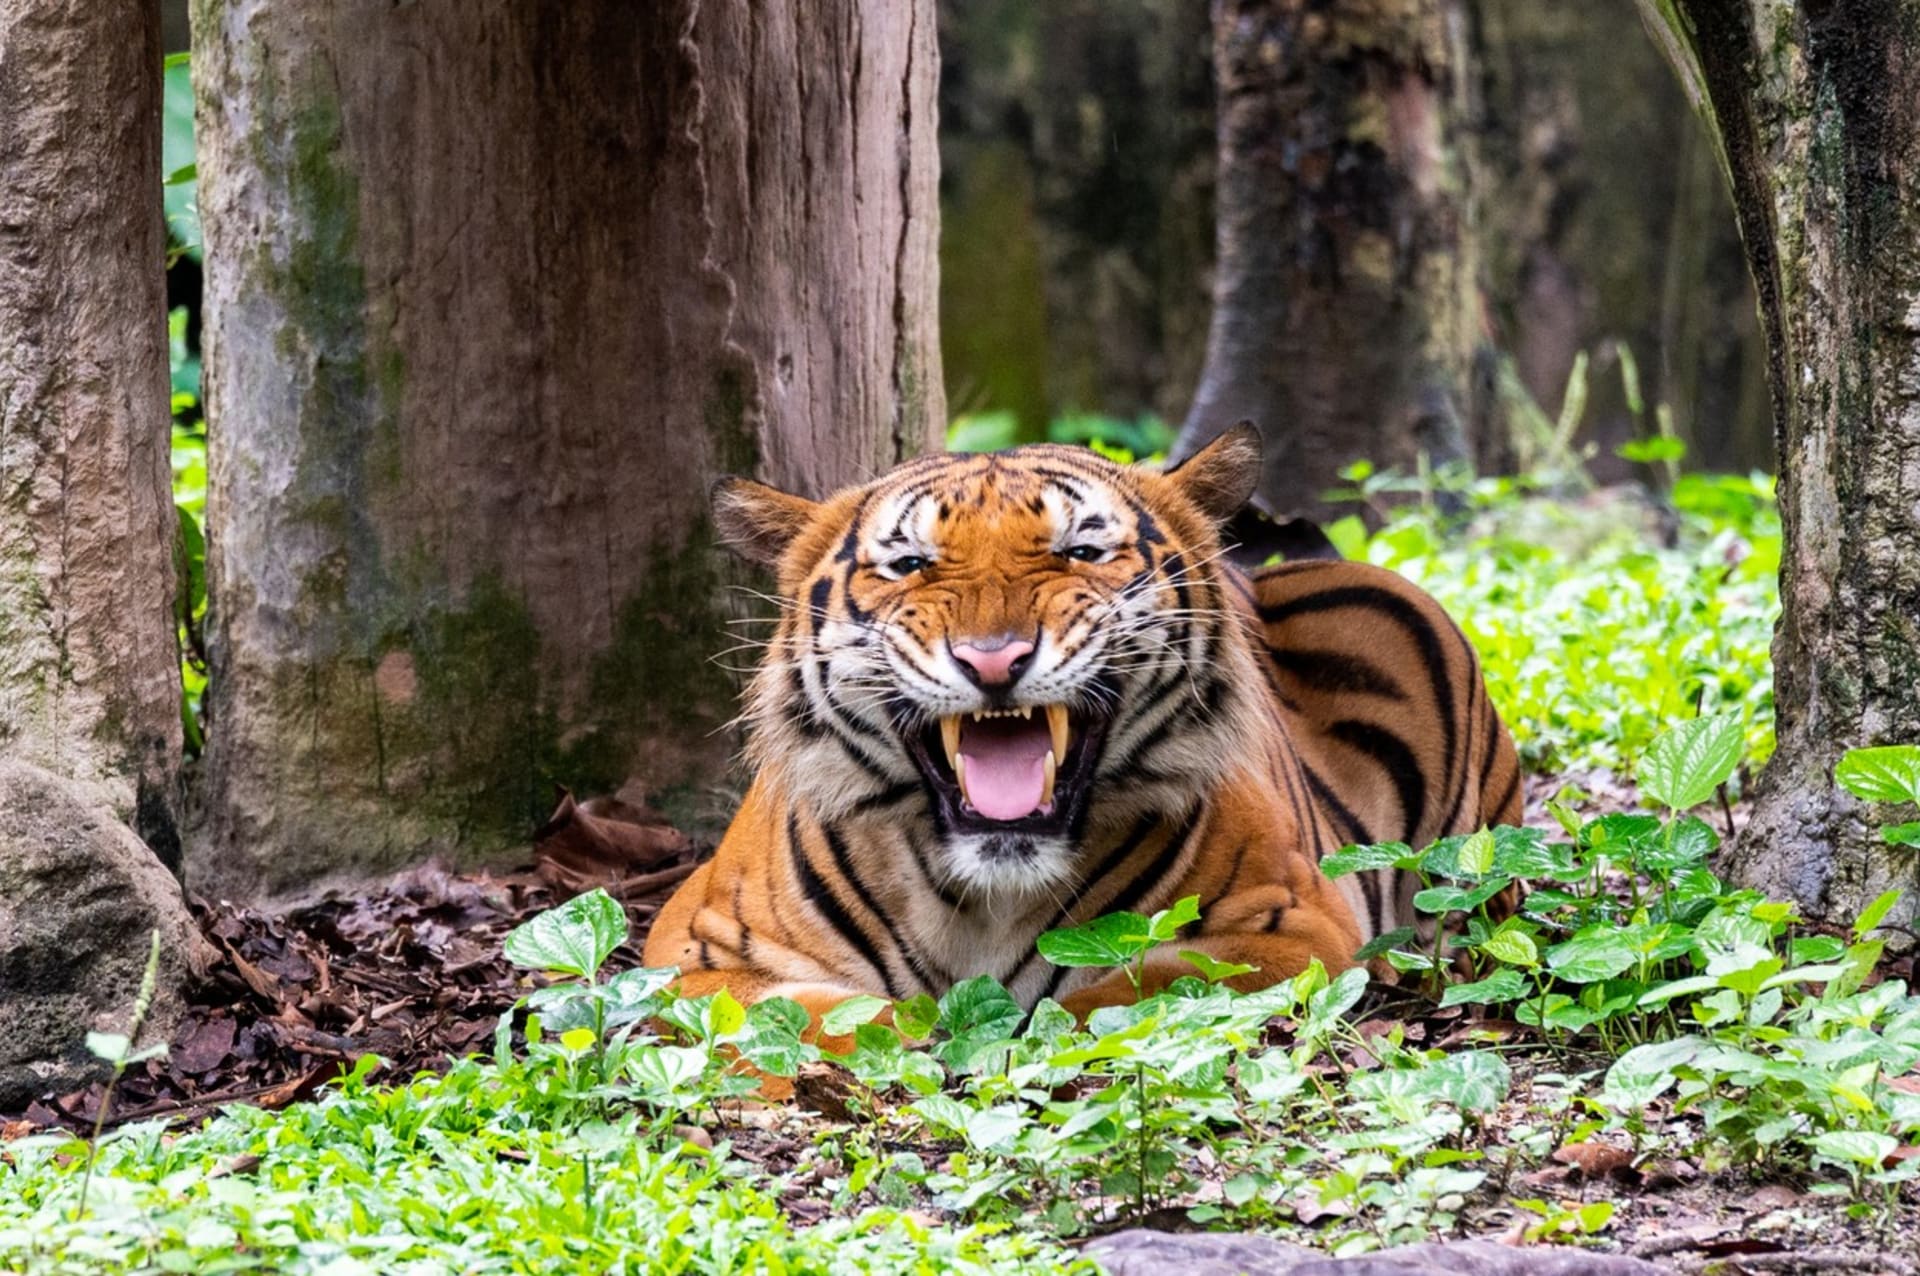 Tygr malajský je národním zvířetem Malajsie